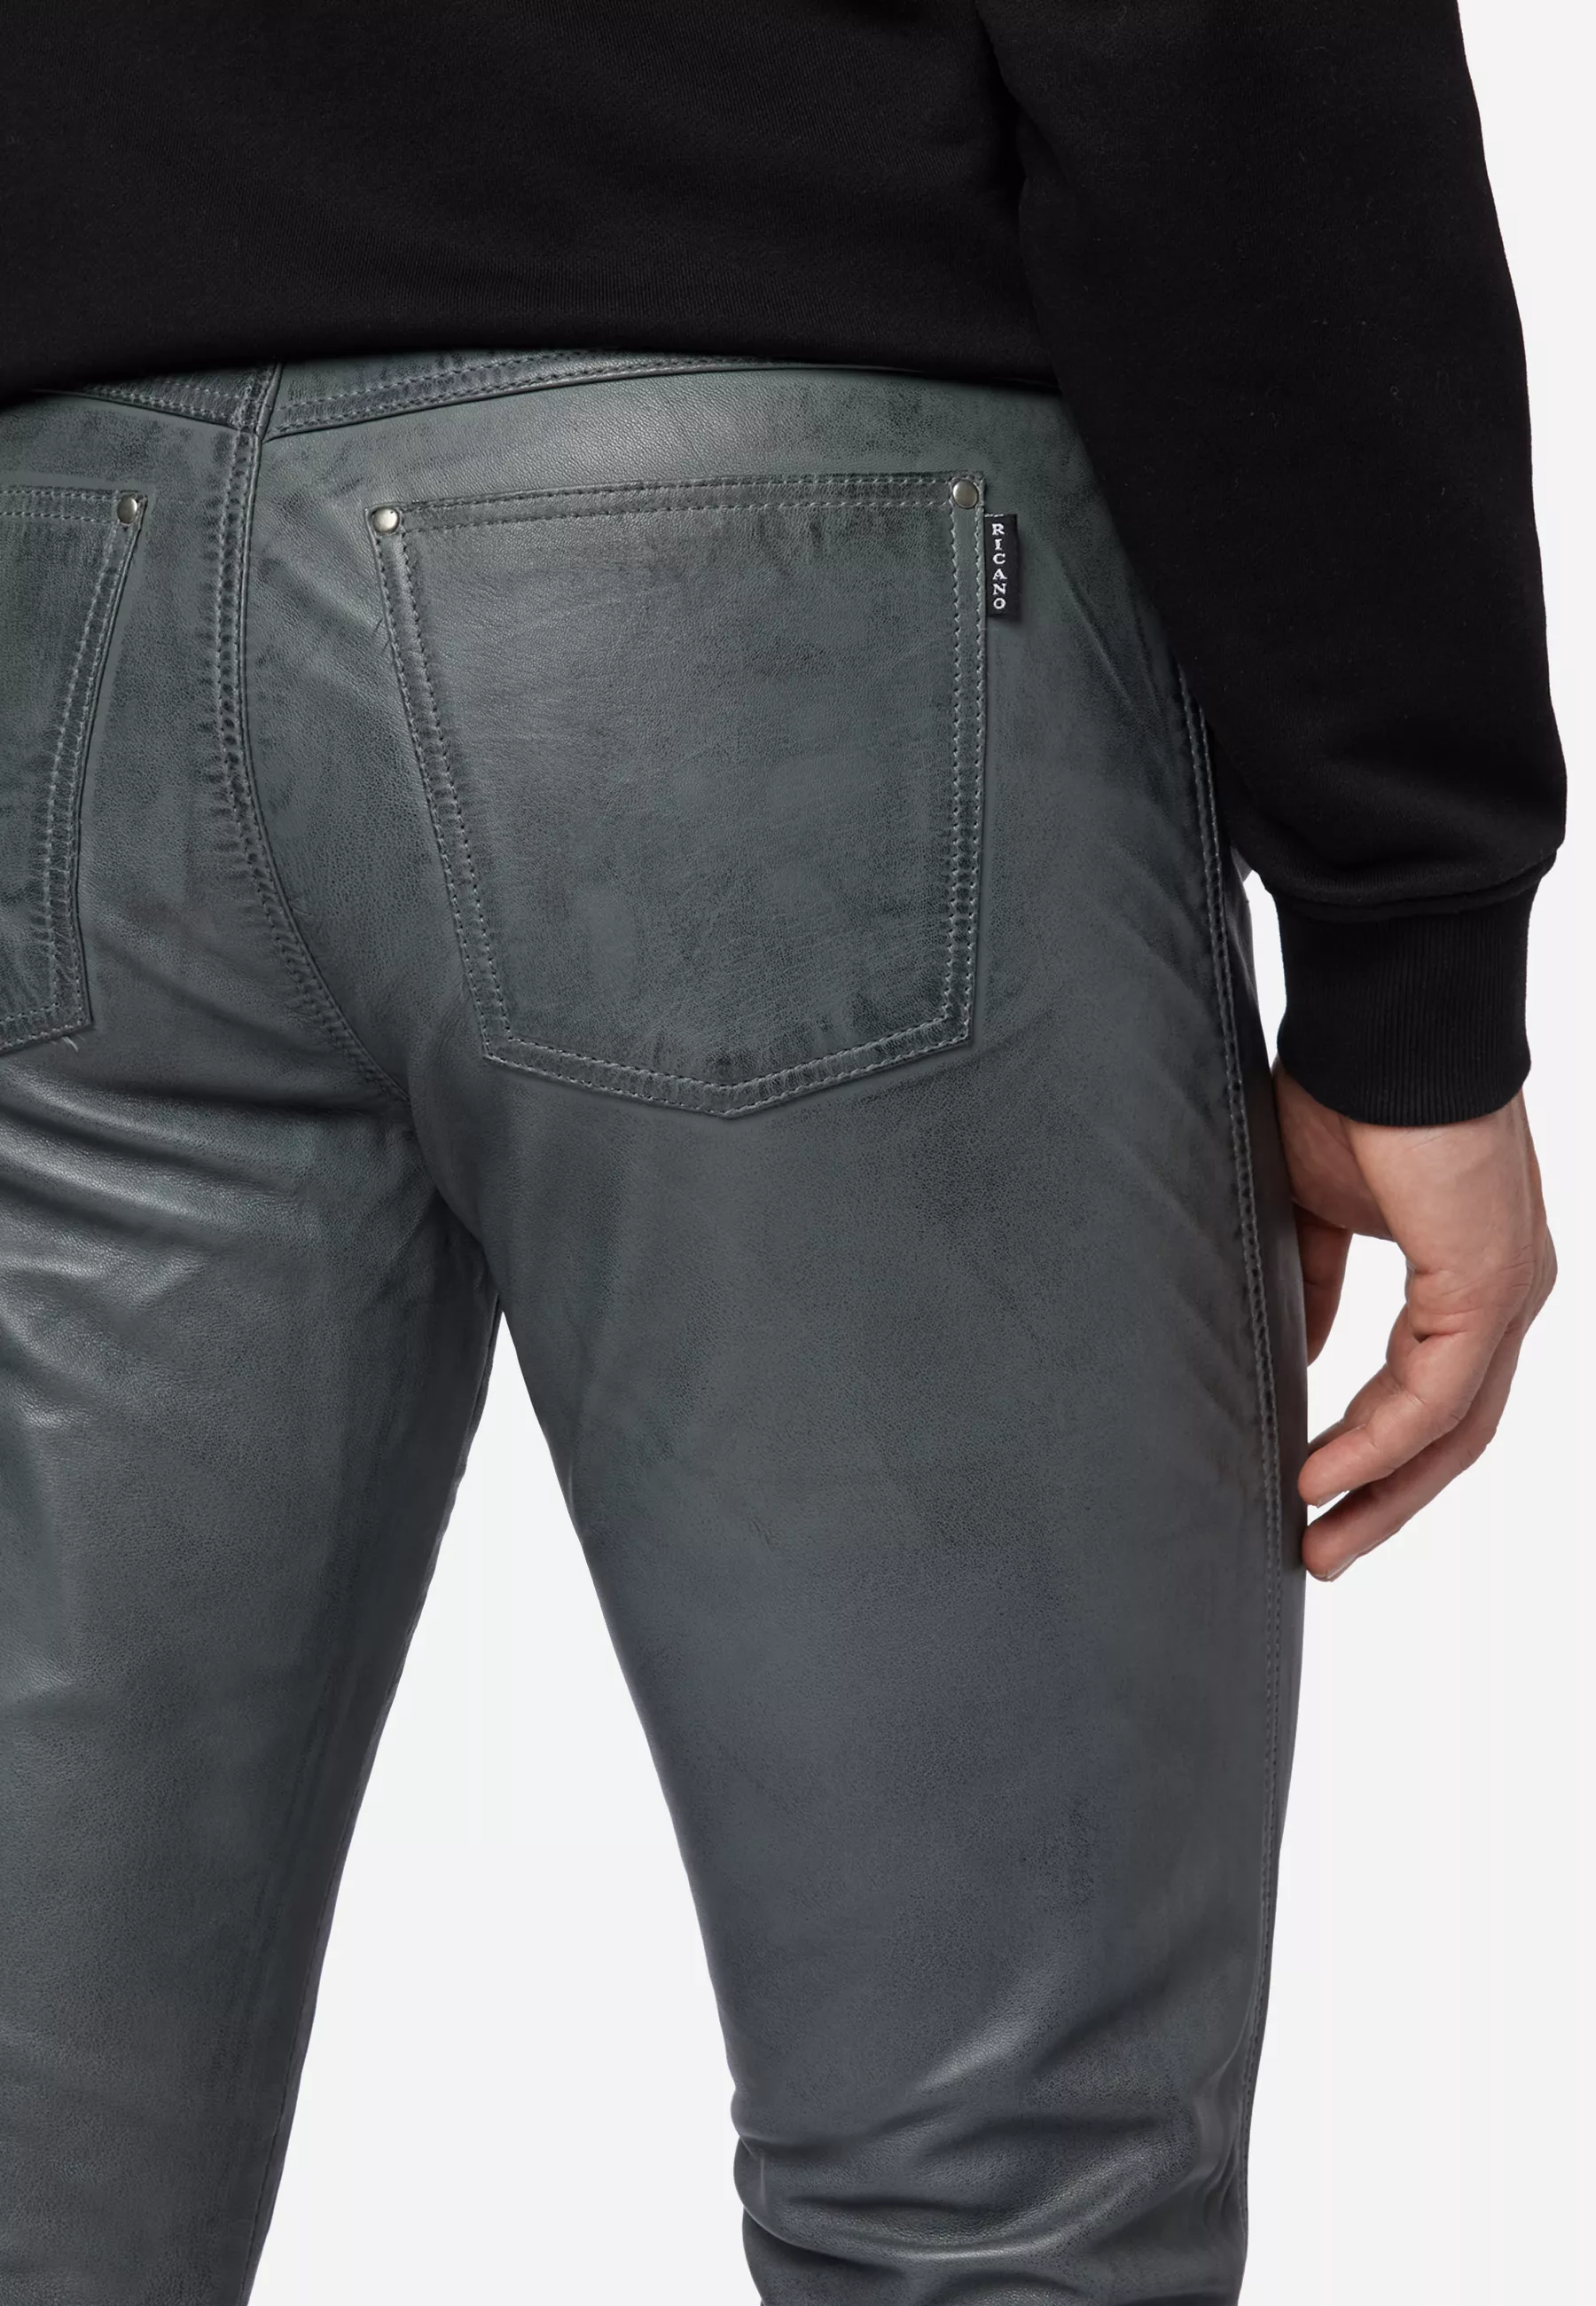 Herren Lederhose Slim Fit in Grau von Ricano, Detailansicht vom Five Pocket Look am Model